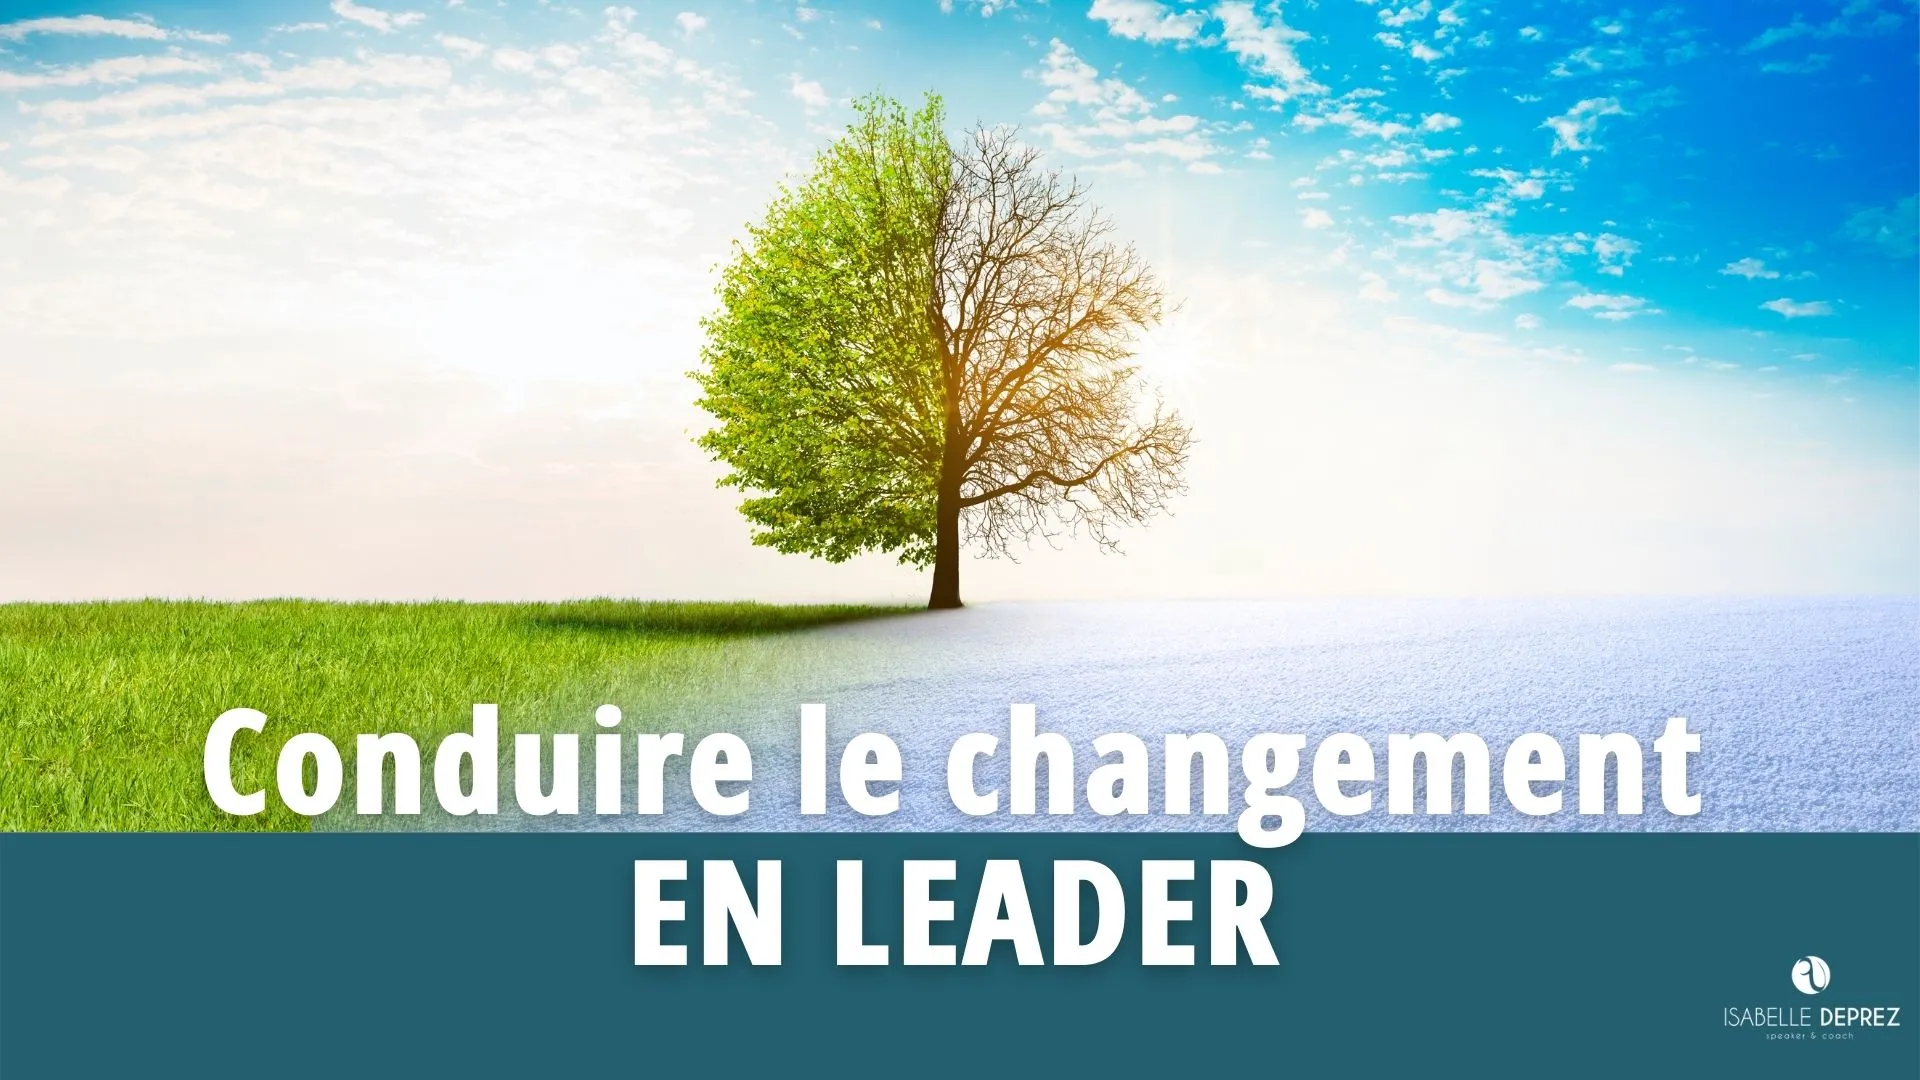 Conduire le changement en leader